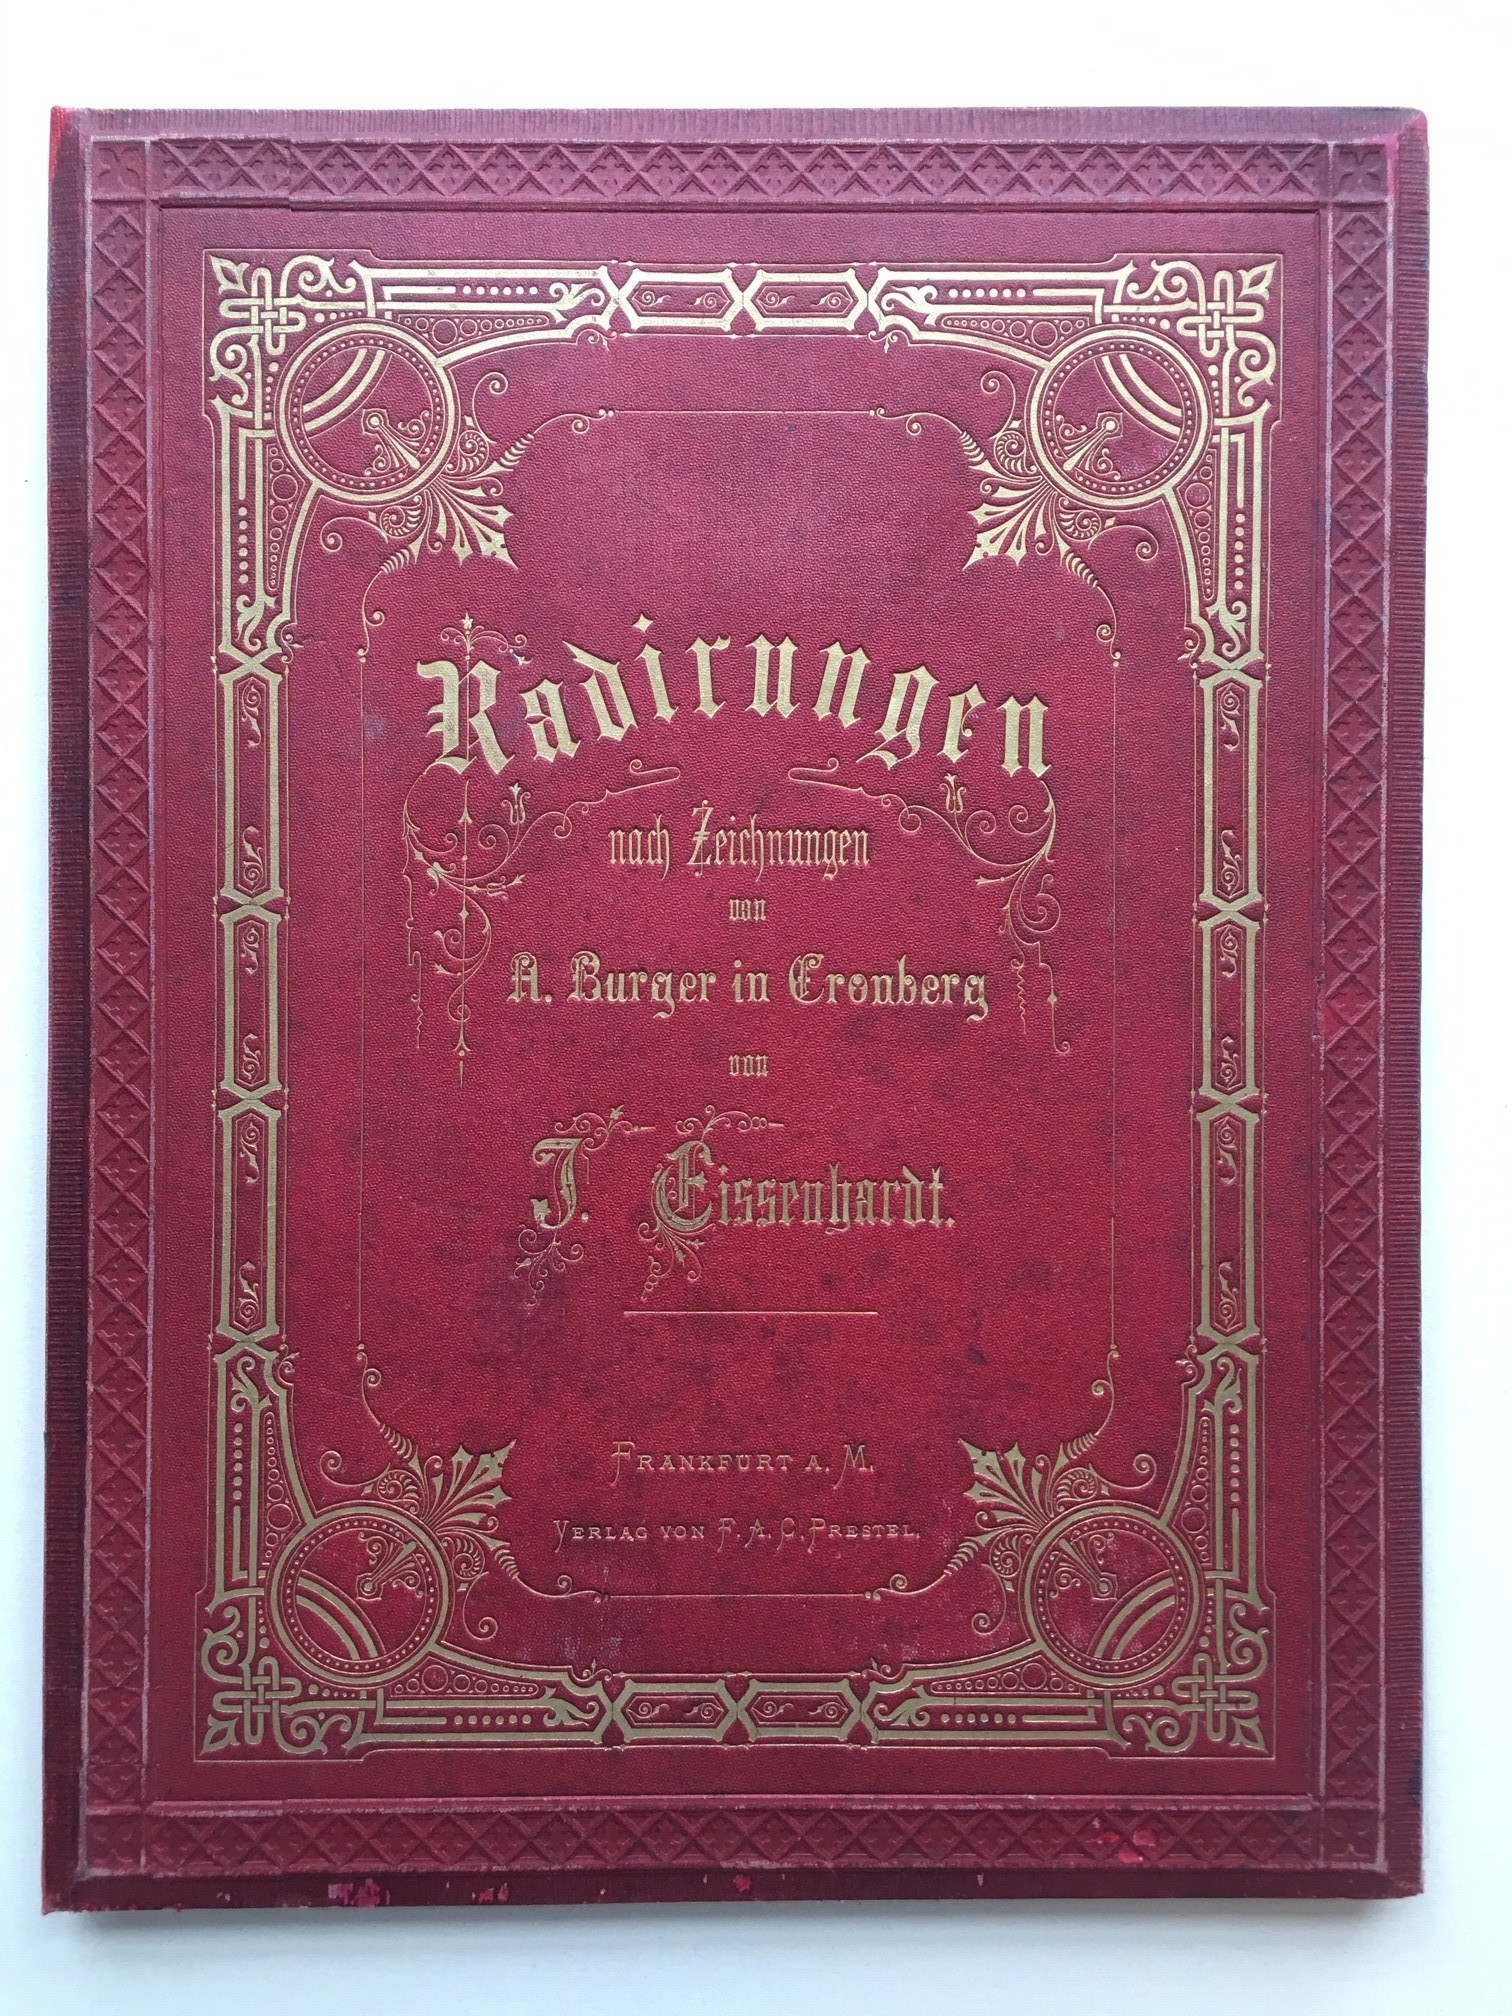 J. Eissenhardt, Radierungen nach Zeichnungen von A. Burger in Cronberg, ca. 1880. (Taunus-Rhein-Main - Regionalgeschichtliche Sammlung Dr. Stefan Naas CC BY-NC-SA)